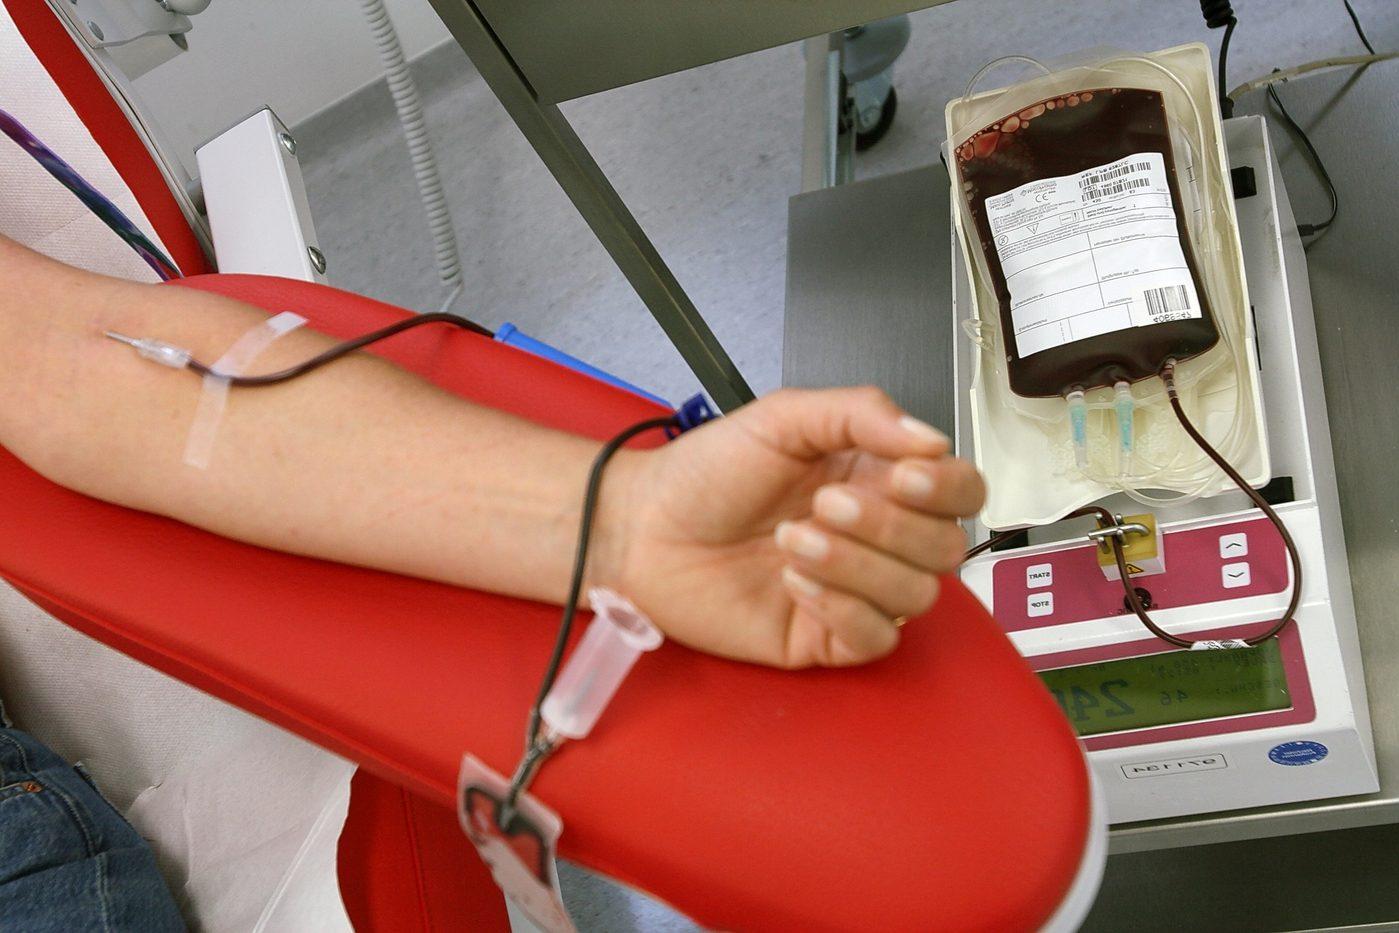 Emergenza sangue, appello dei medici sardi: “Servono donazioni”